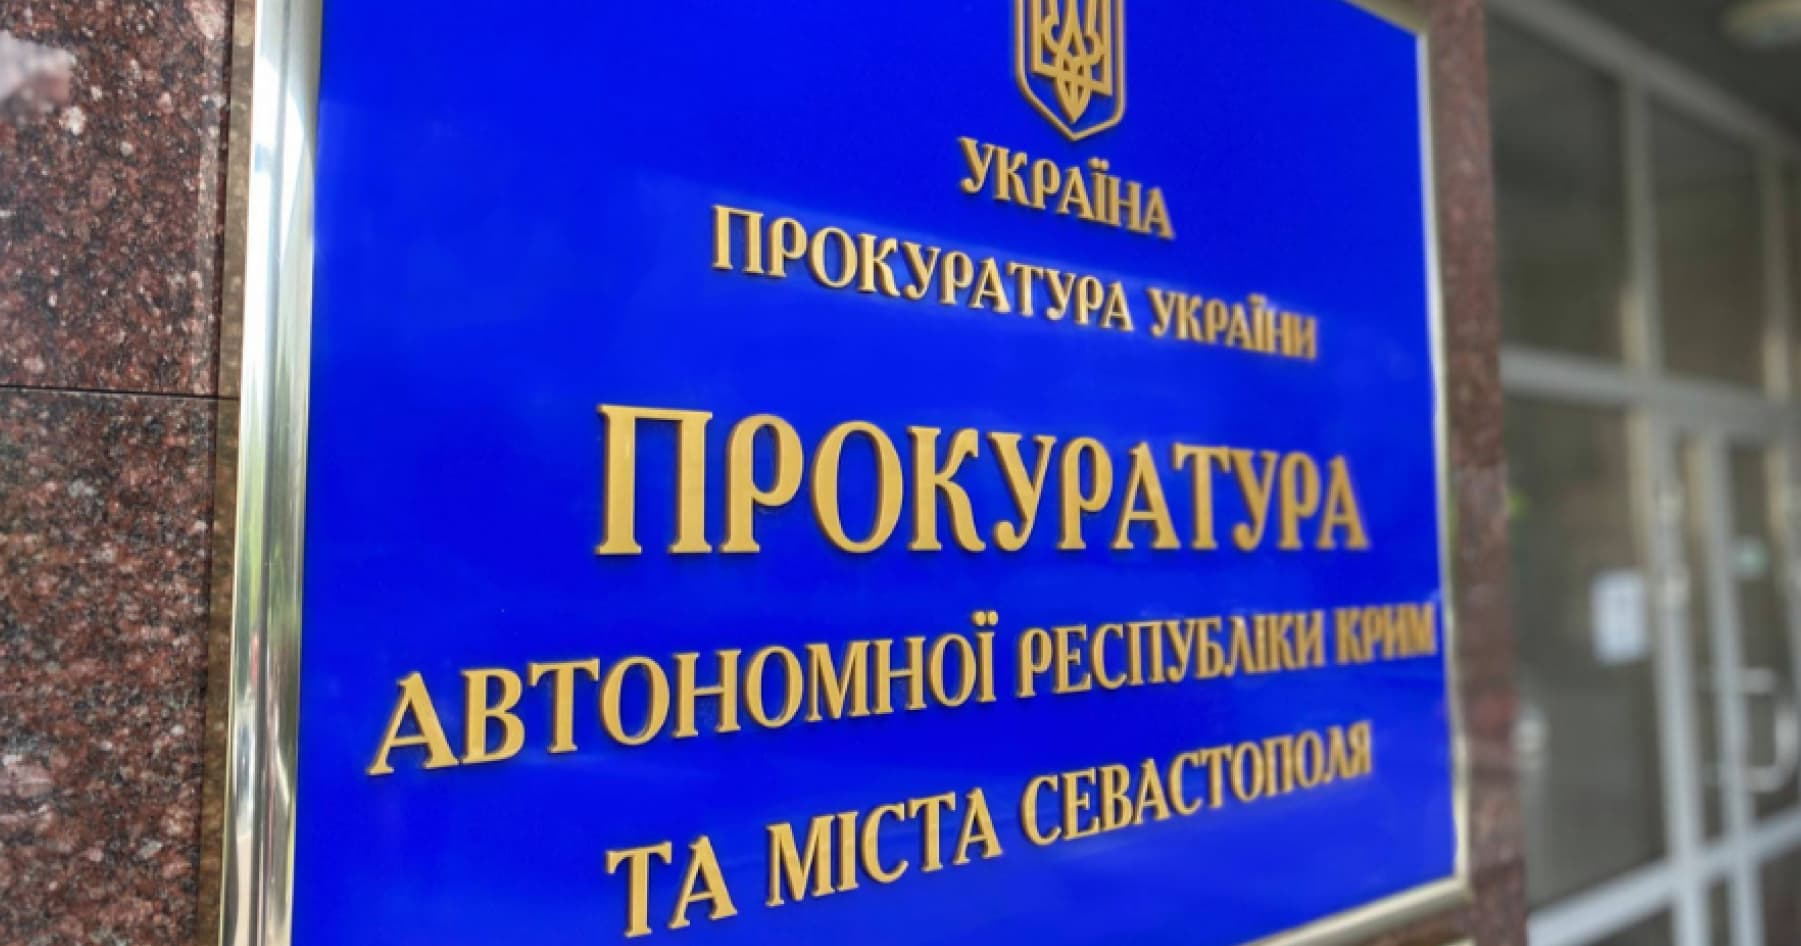 Прокуратура АР Крим і Севастополя оголосила підозру у держзраді 713 особам